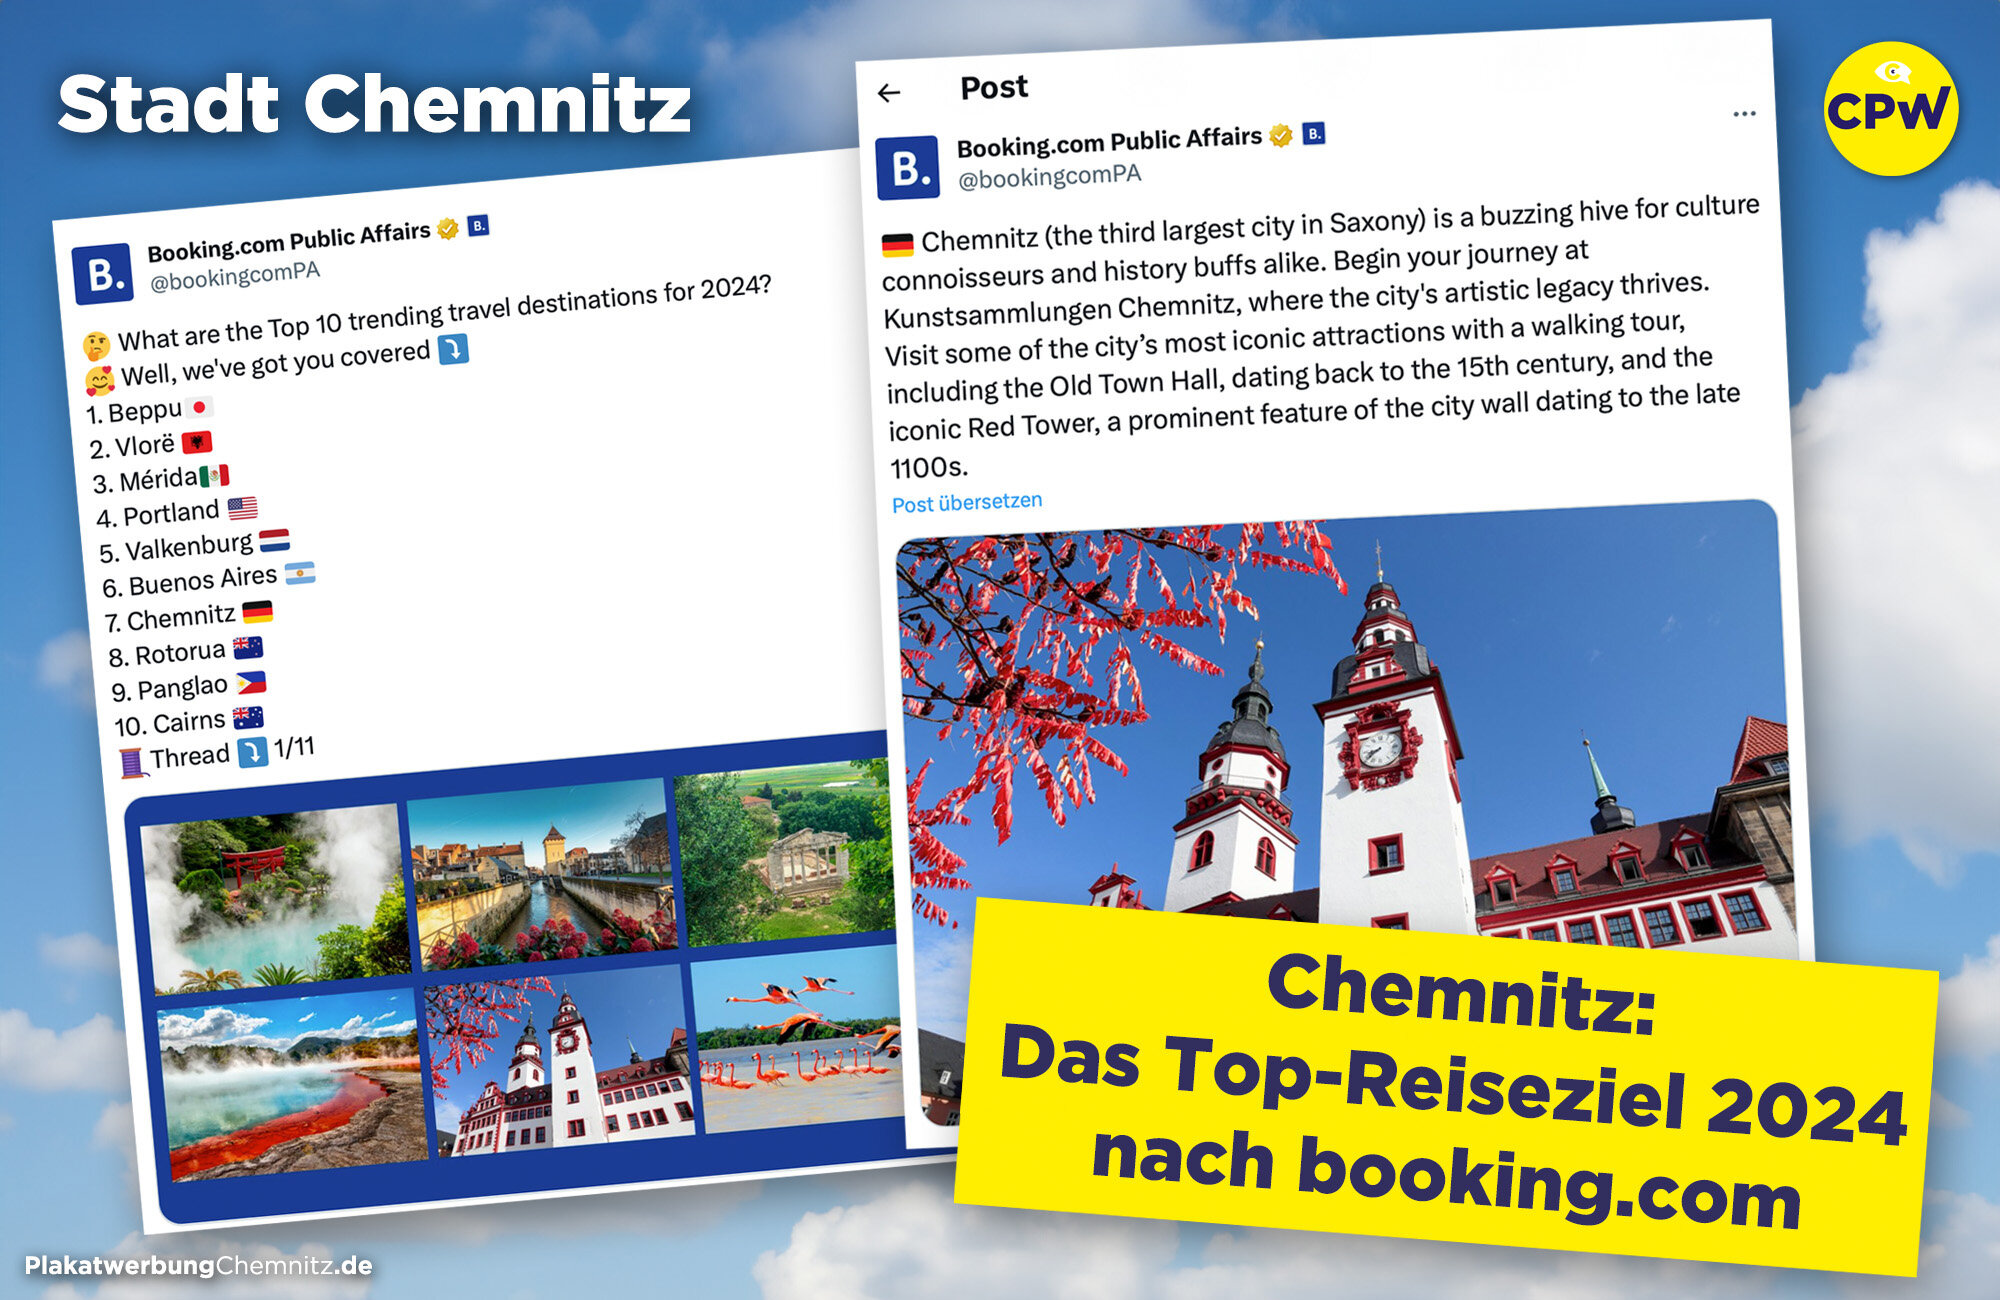 Chemnitz ist Top Reiseziel 2024 nach Booking.com - Kulturhauptstadt Europas 2025